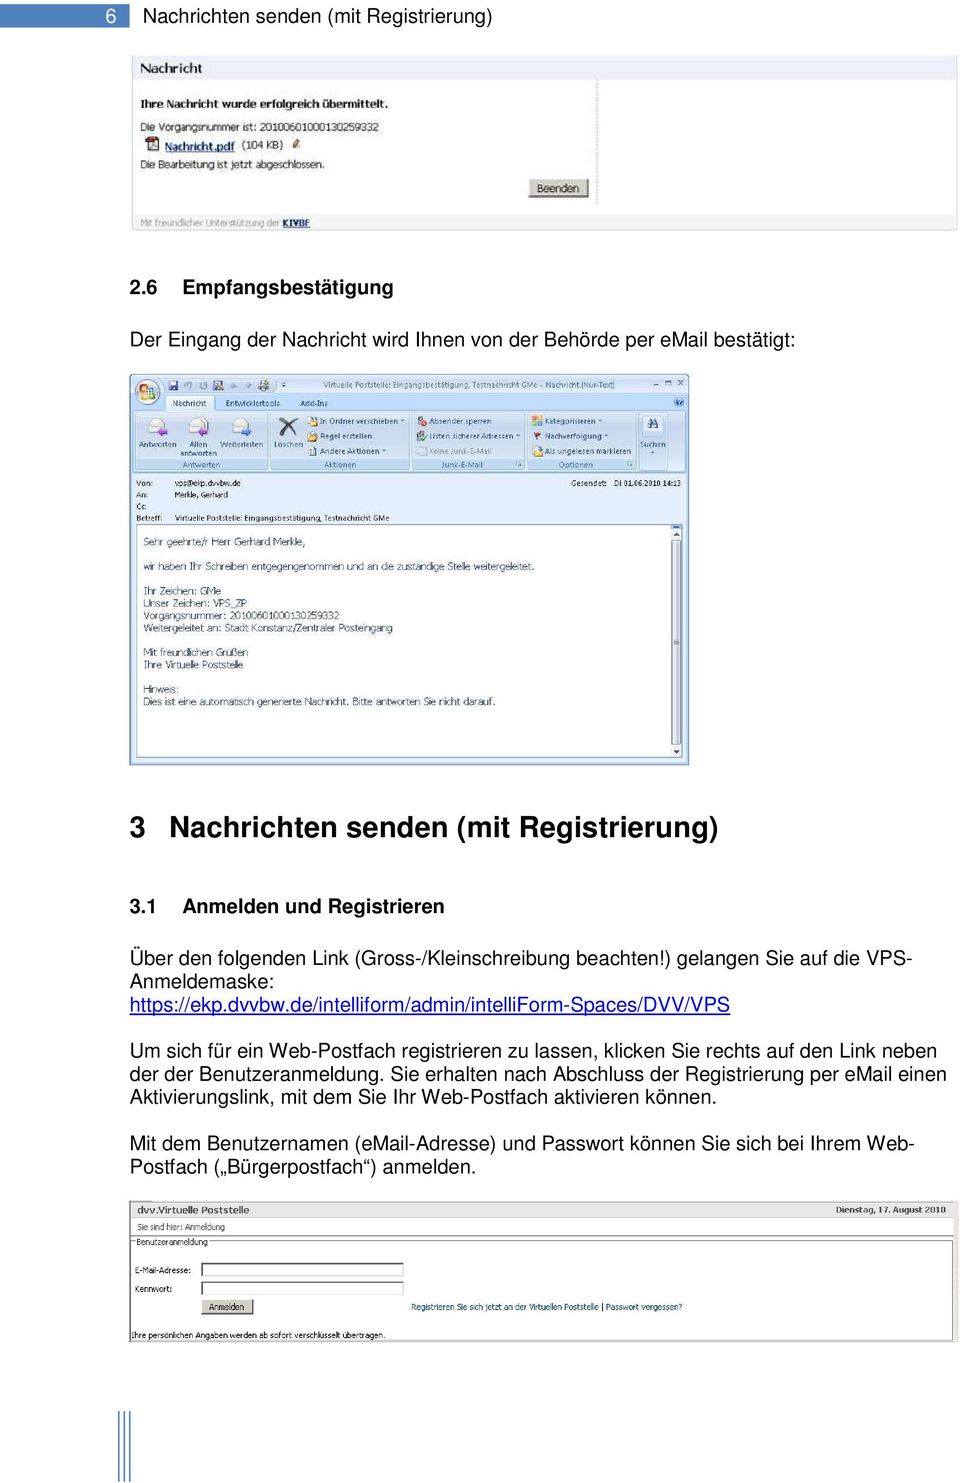 de/intelliform/admin/intelliform-spaces/dvv/vps Um sich für ein Web-Postfach registrieren zu lassen, klicken Sie rechts auf den Link neben der der Benutzeranmeldung.